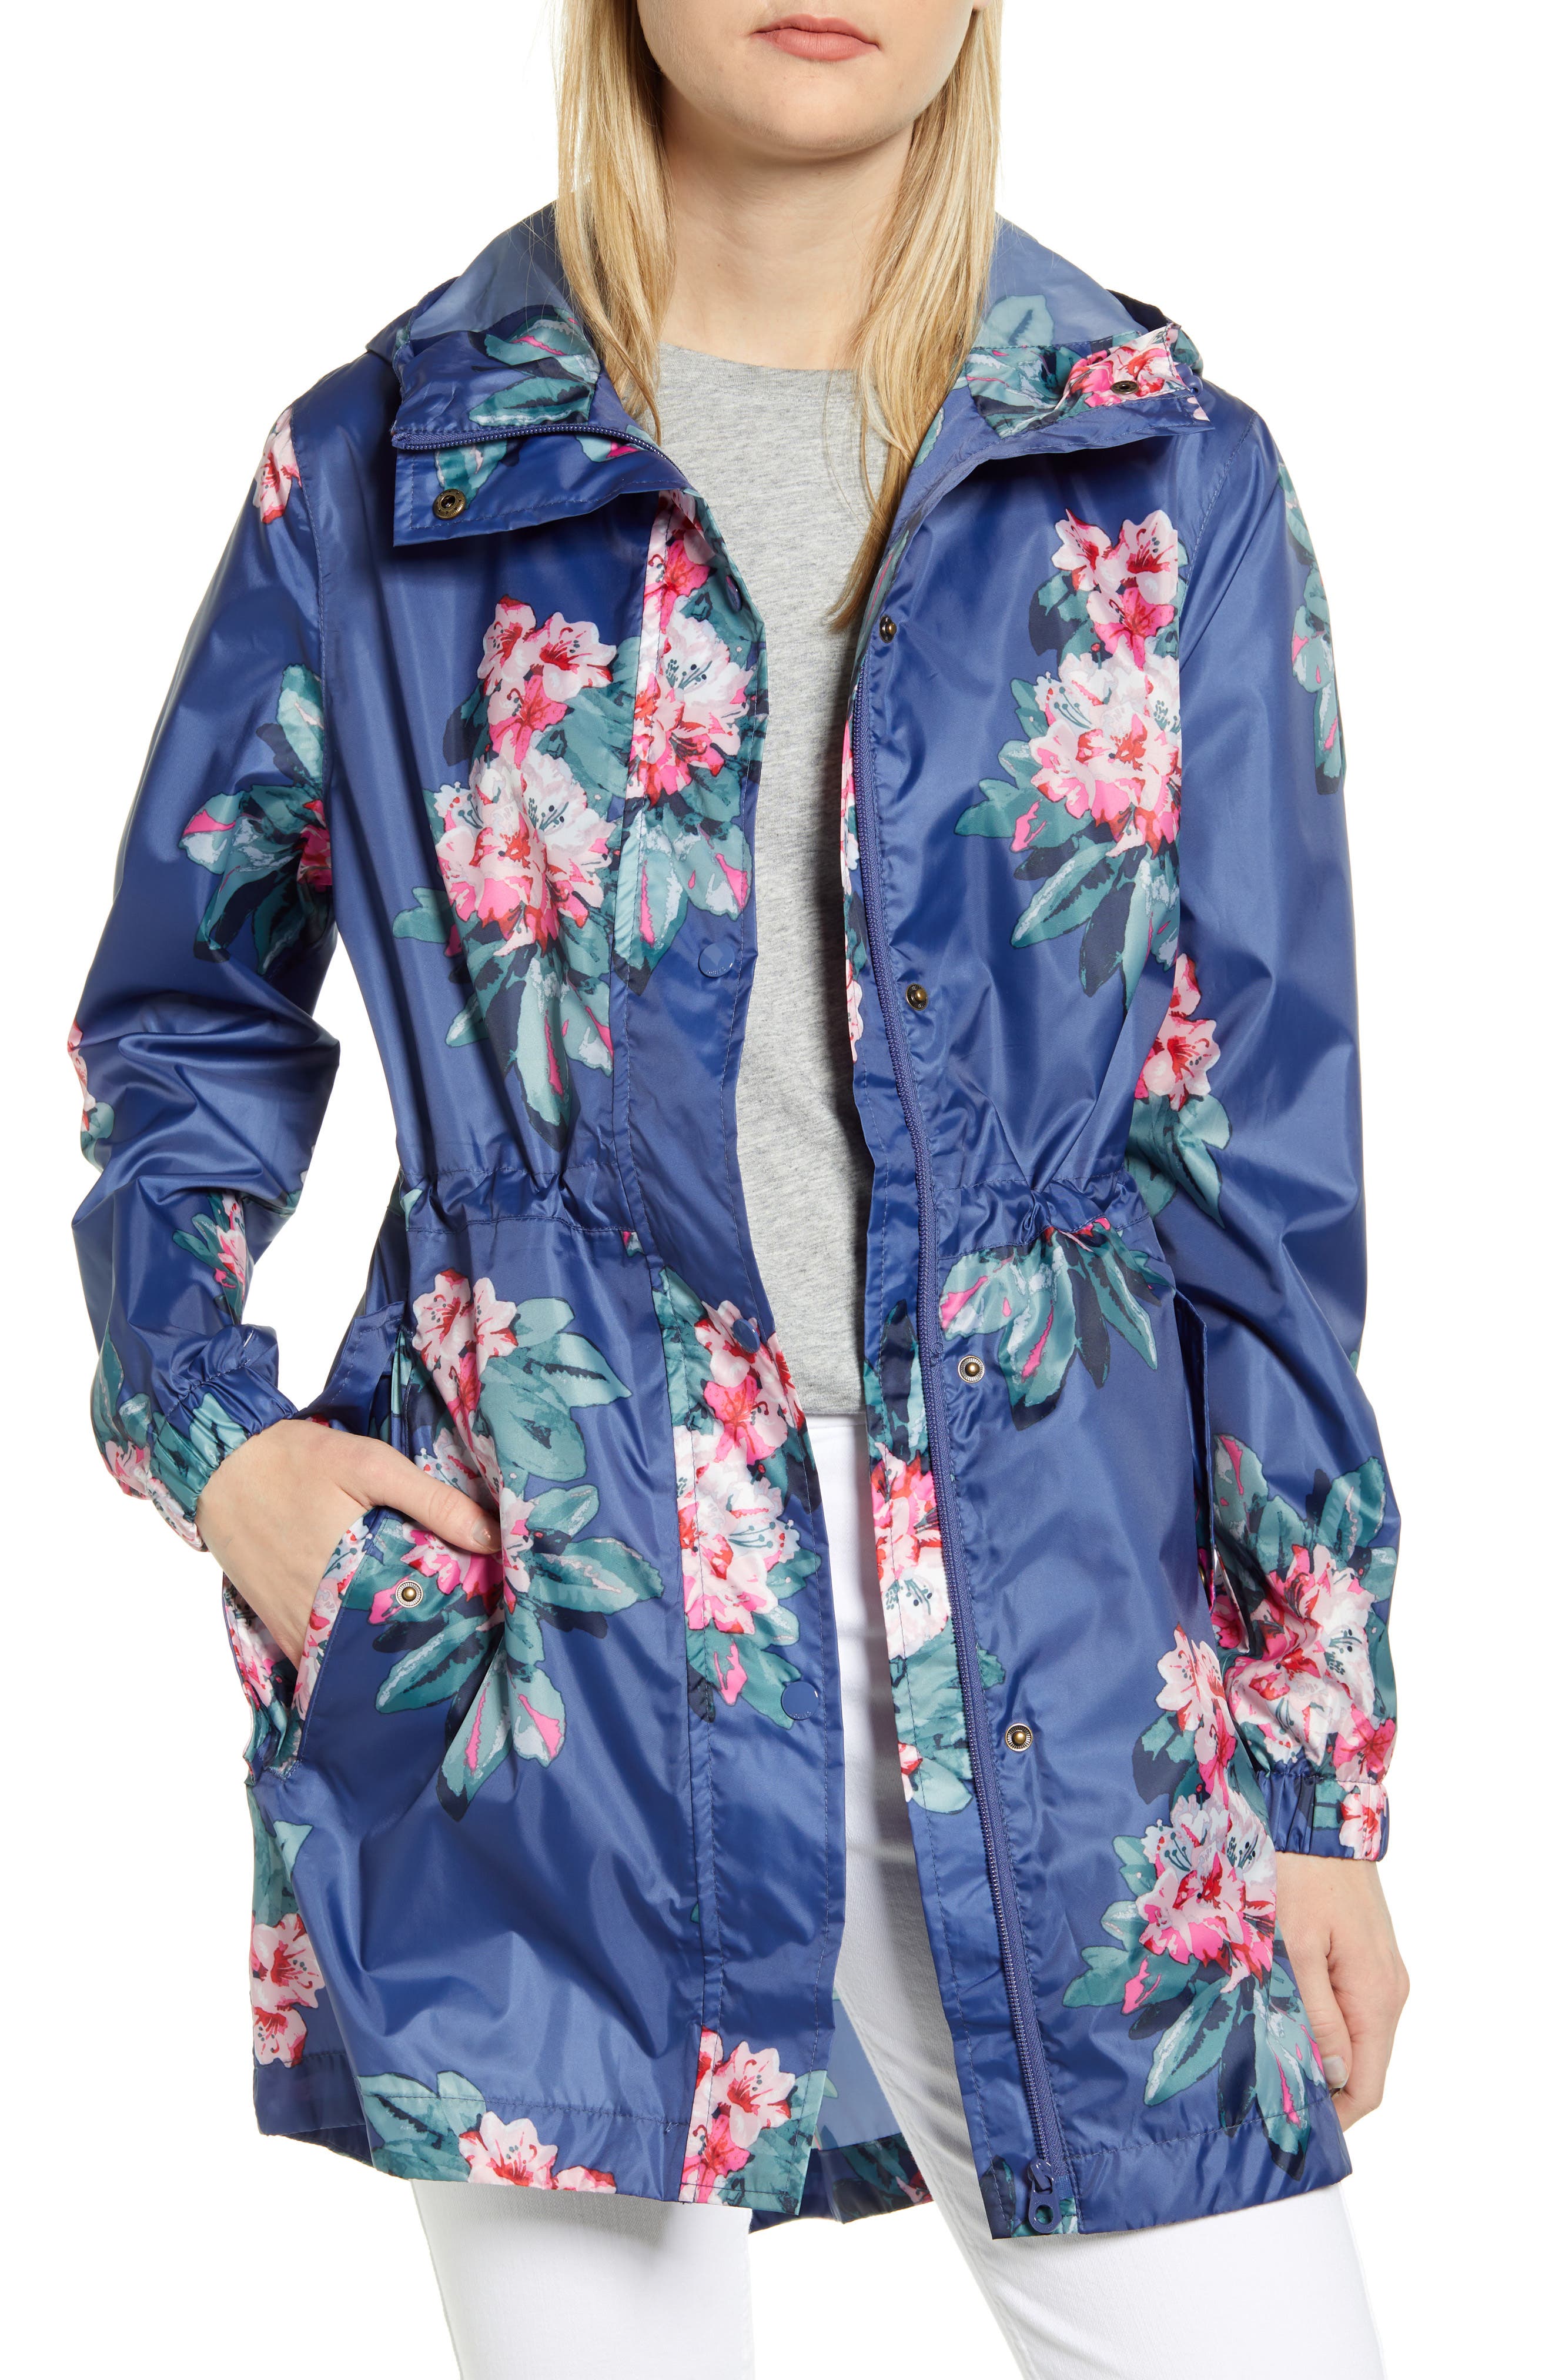 Joules Packable Waterproof Rain Jacket In Blue Floral